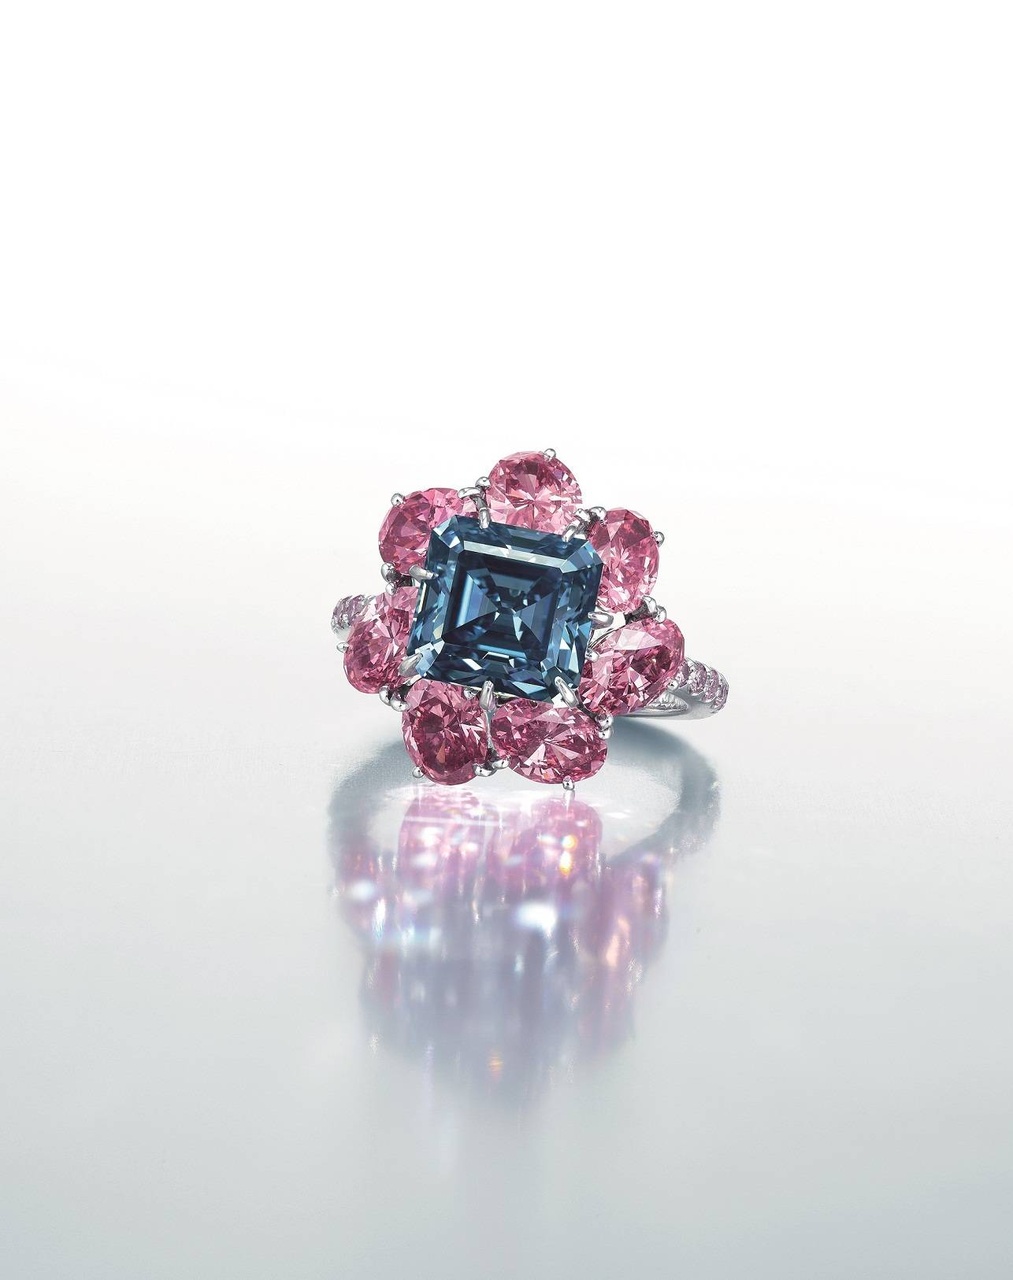 3.24 克拉鮮彩藍色 IF 鑽石戒指, Moussaieff設計，估價：港幣 44,500,000–60,000,000，右圖。